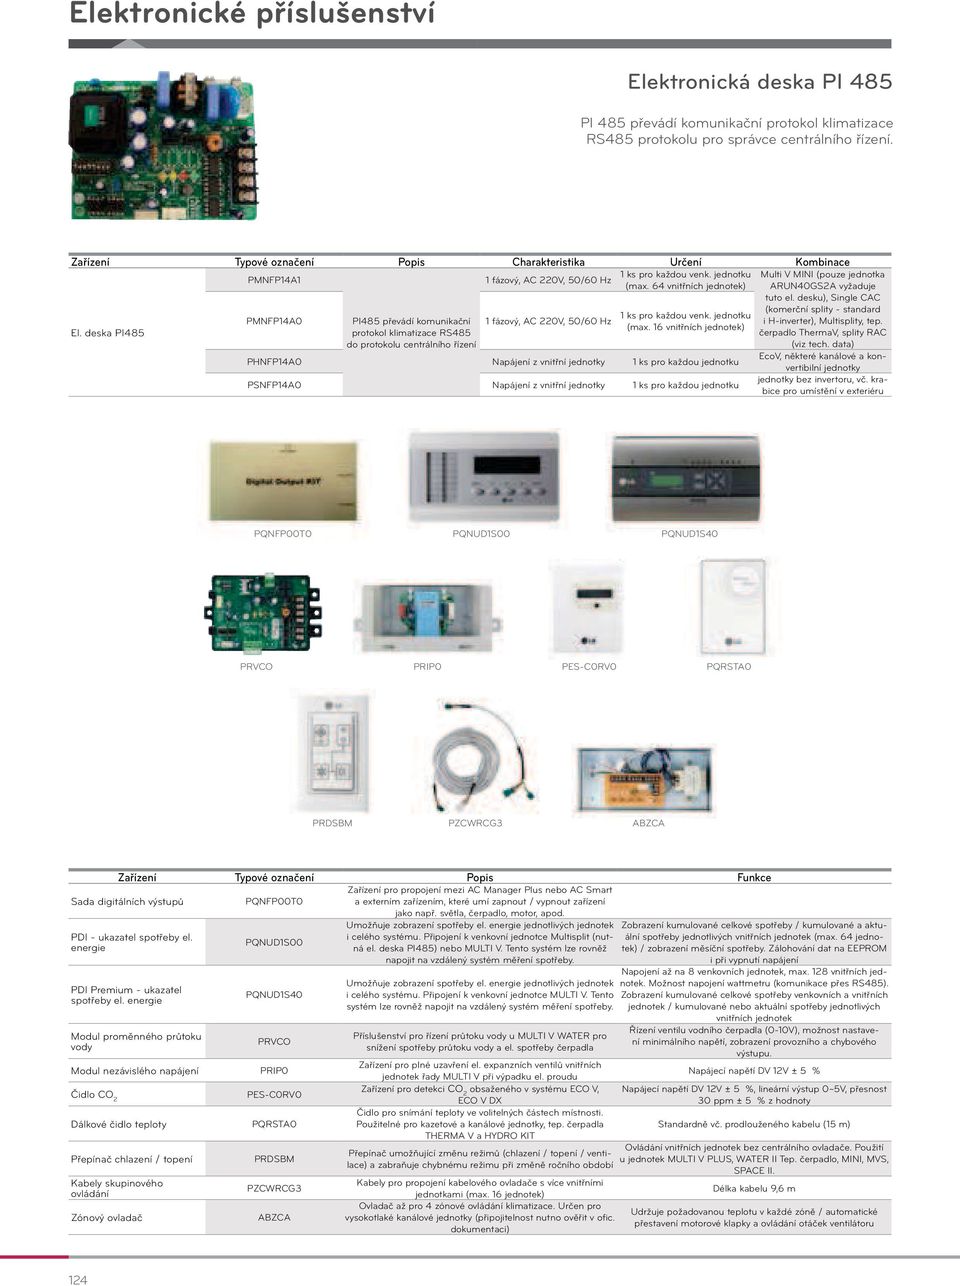 deska PI485 PMNFP14A0 PI485 převádí komunikační 1 fázový, AC 220V, 50/60 Hz protokol klimatizace RS485 do protokolu centrálního řízení 1 ks pro každou venk. jednotku (max.